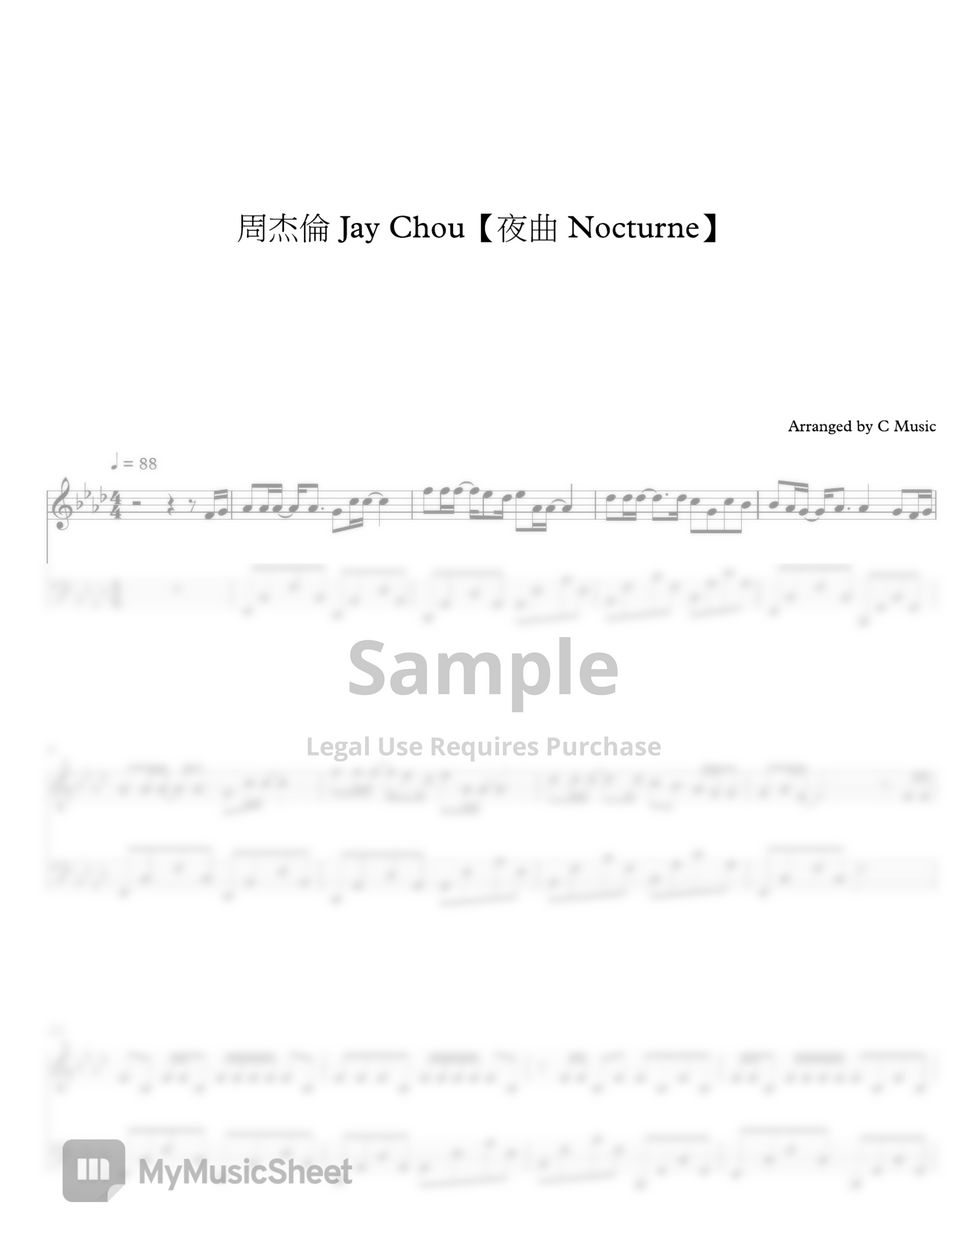 周杰倫 Jay Chou - 夜曲 Nocturne by C Music